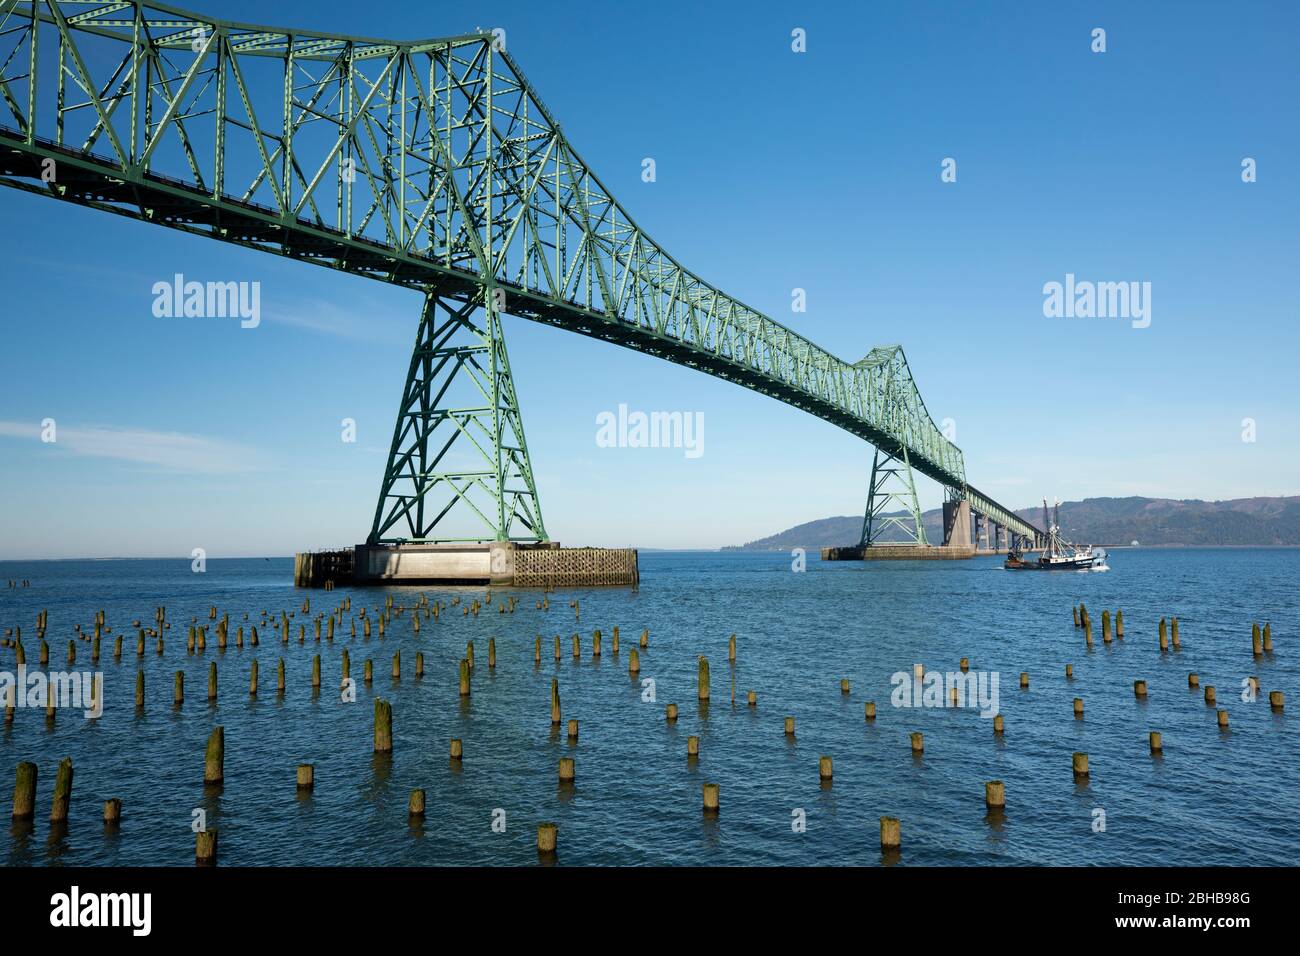 View of piles on sea, Astoria Bridge behind, Oregon, USA Stock Photo